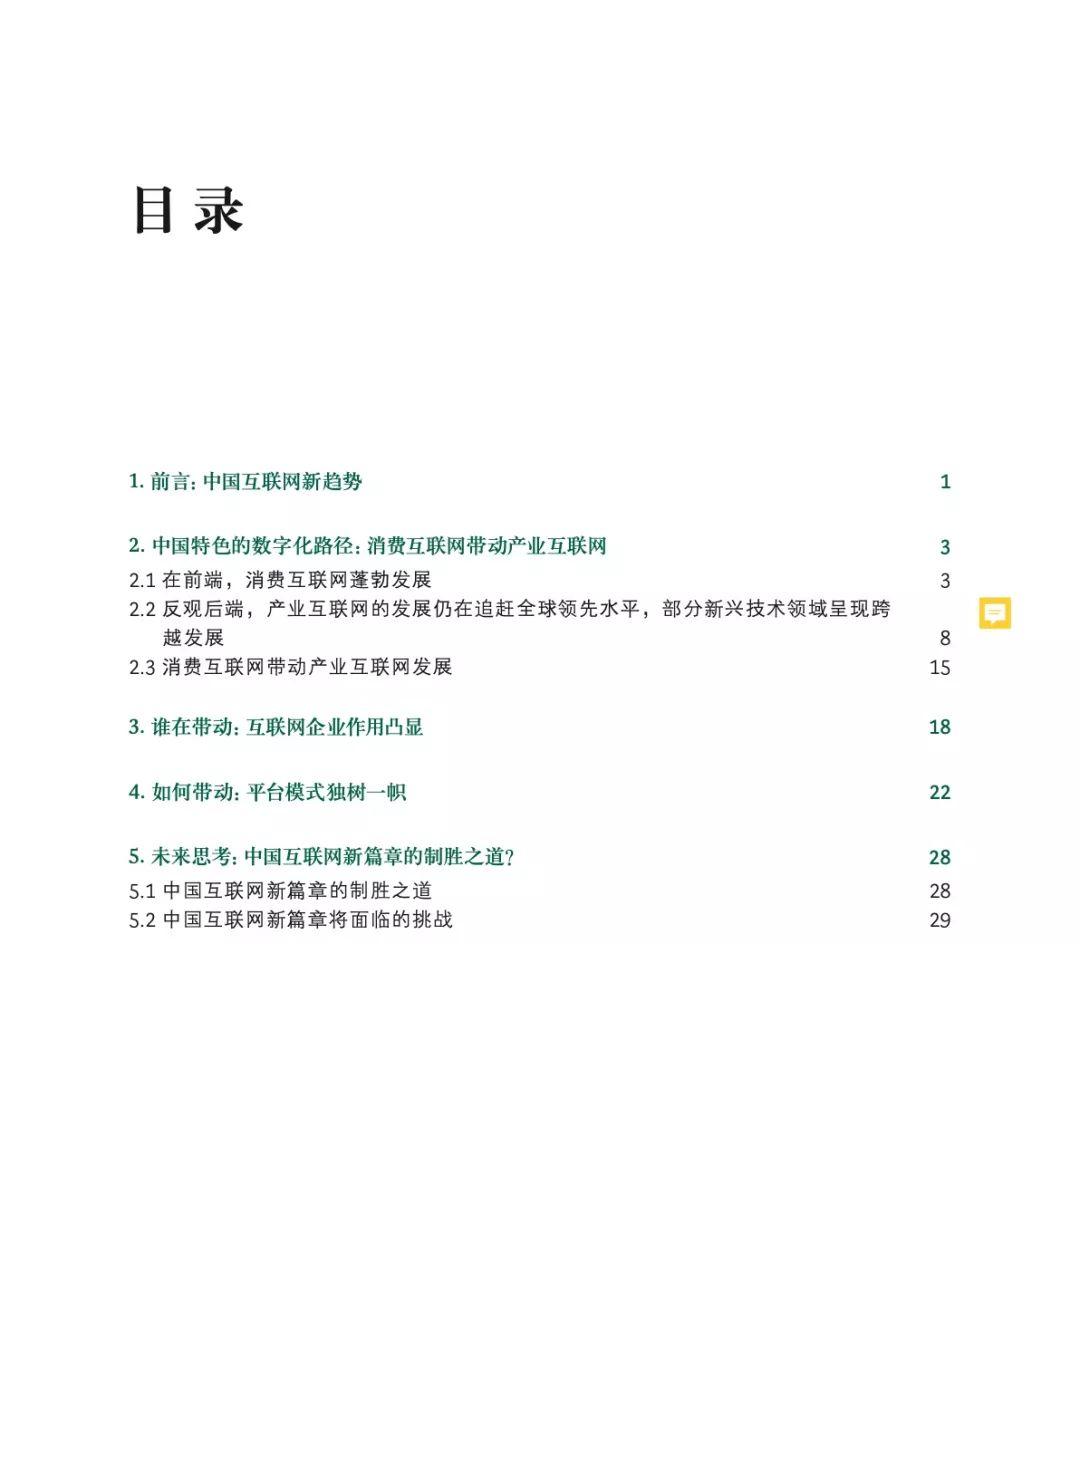 阿里、百度、波士顿联合发布中国互联网经济白皮书2.0，解读中国互联网新篇章：迈向产业融合